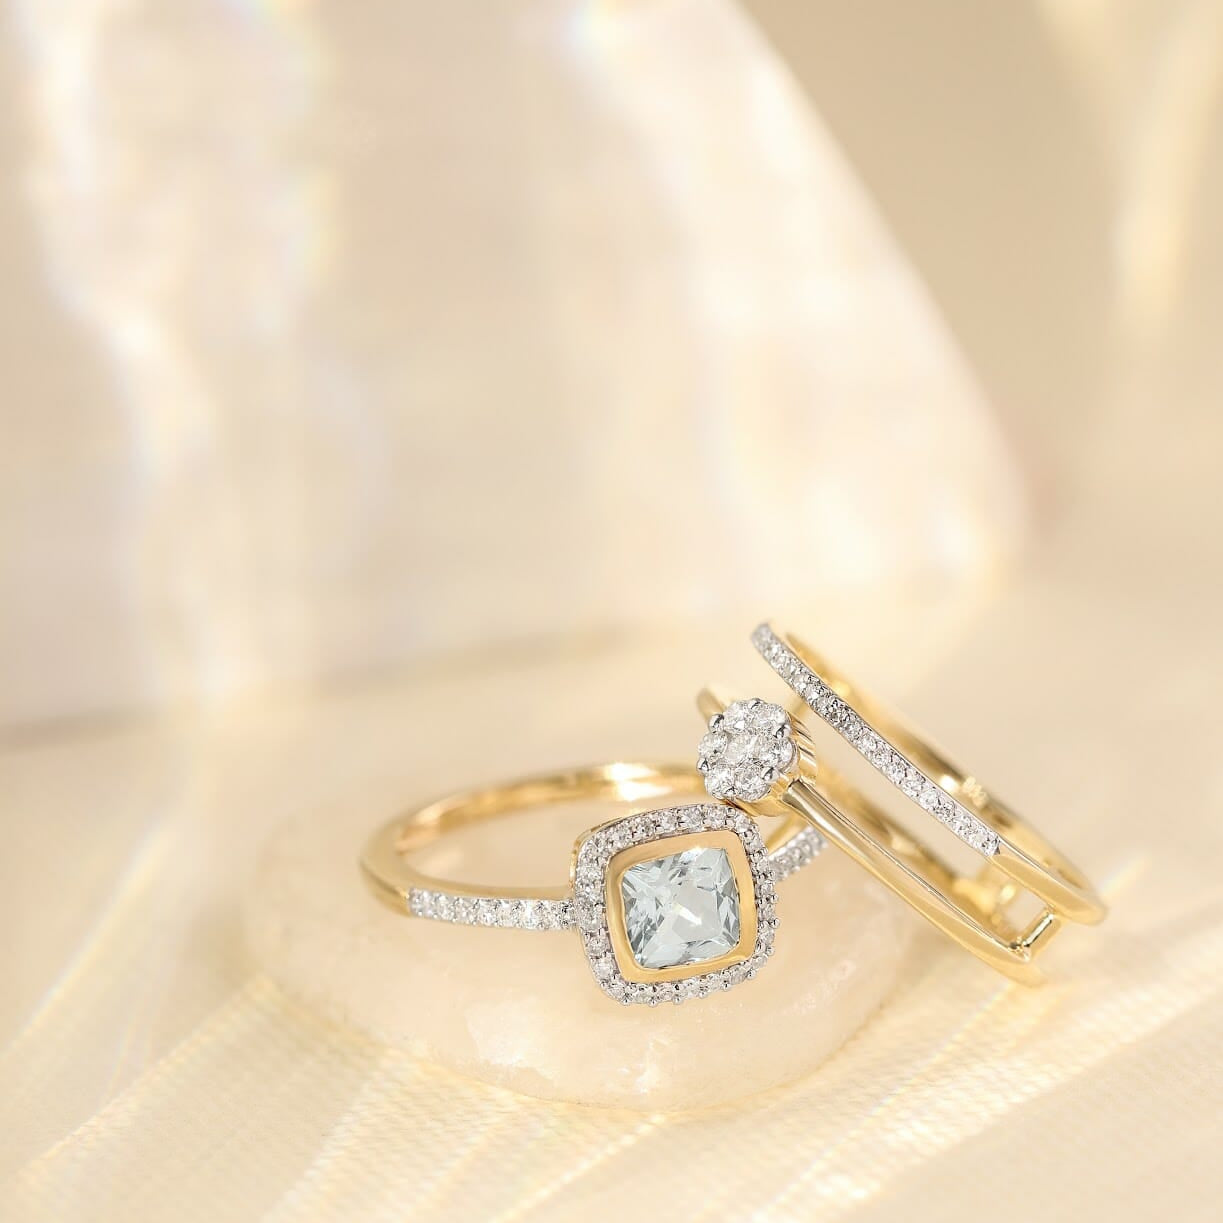 Jak wybrać pierścionek zaręczynowy?